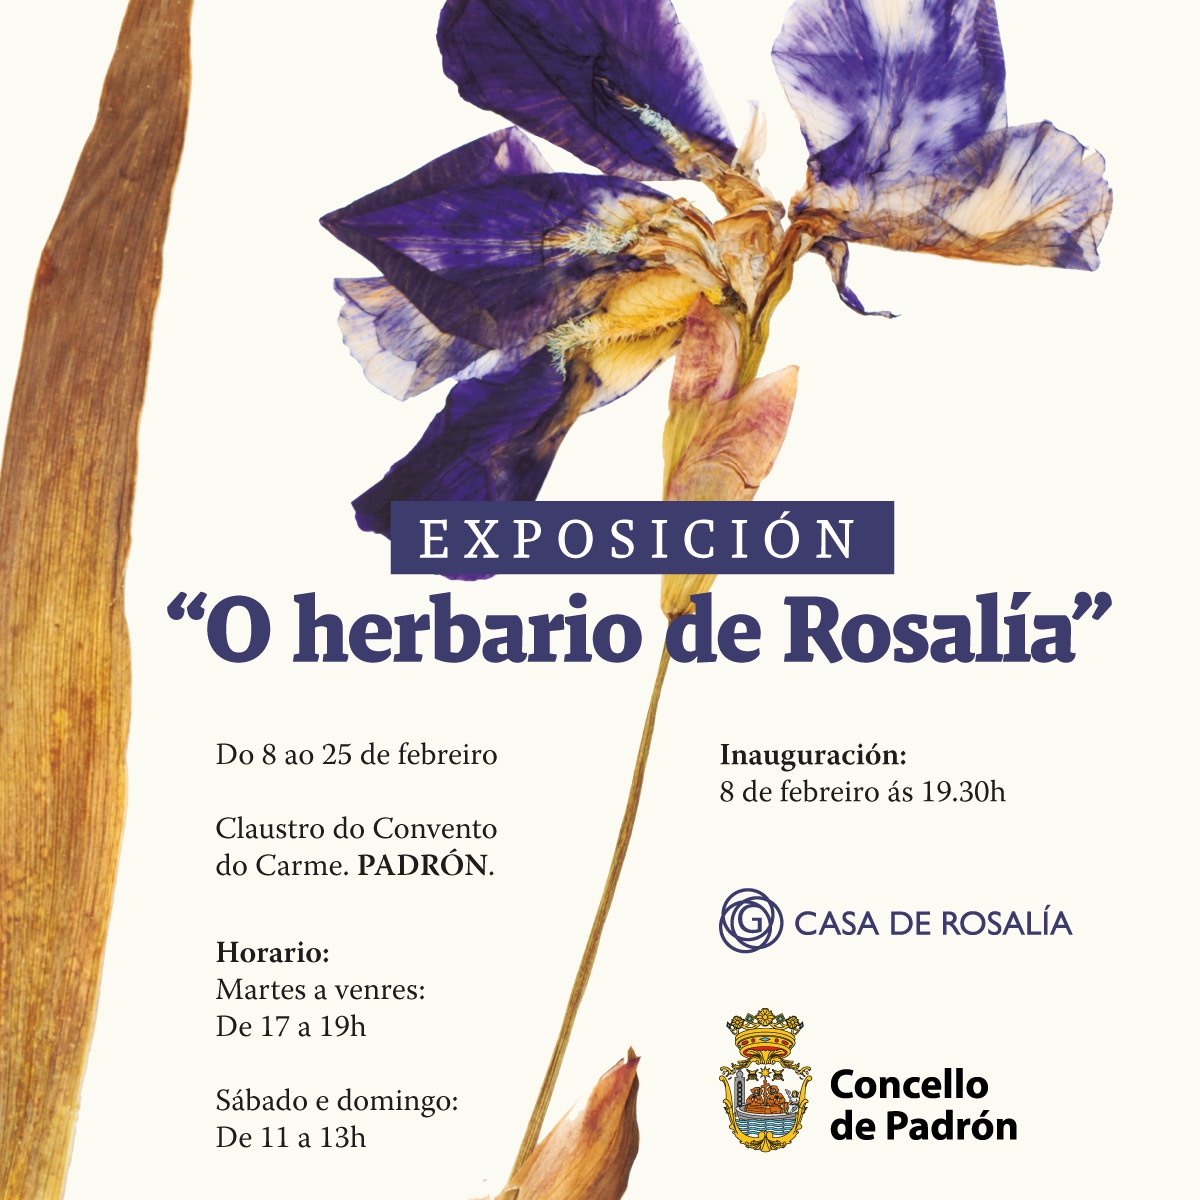 Exposición do herbario de Rosalía